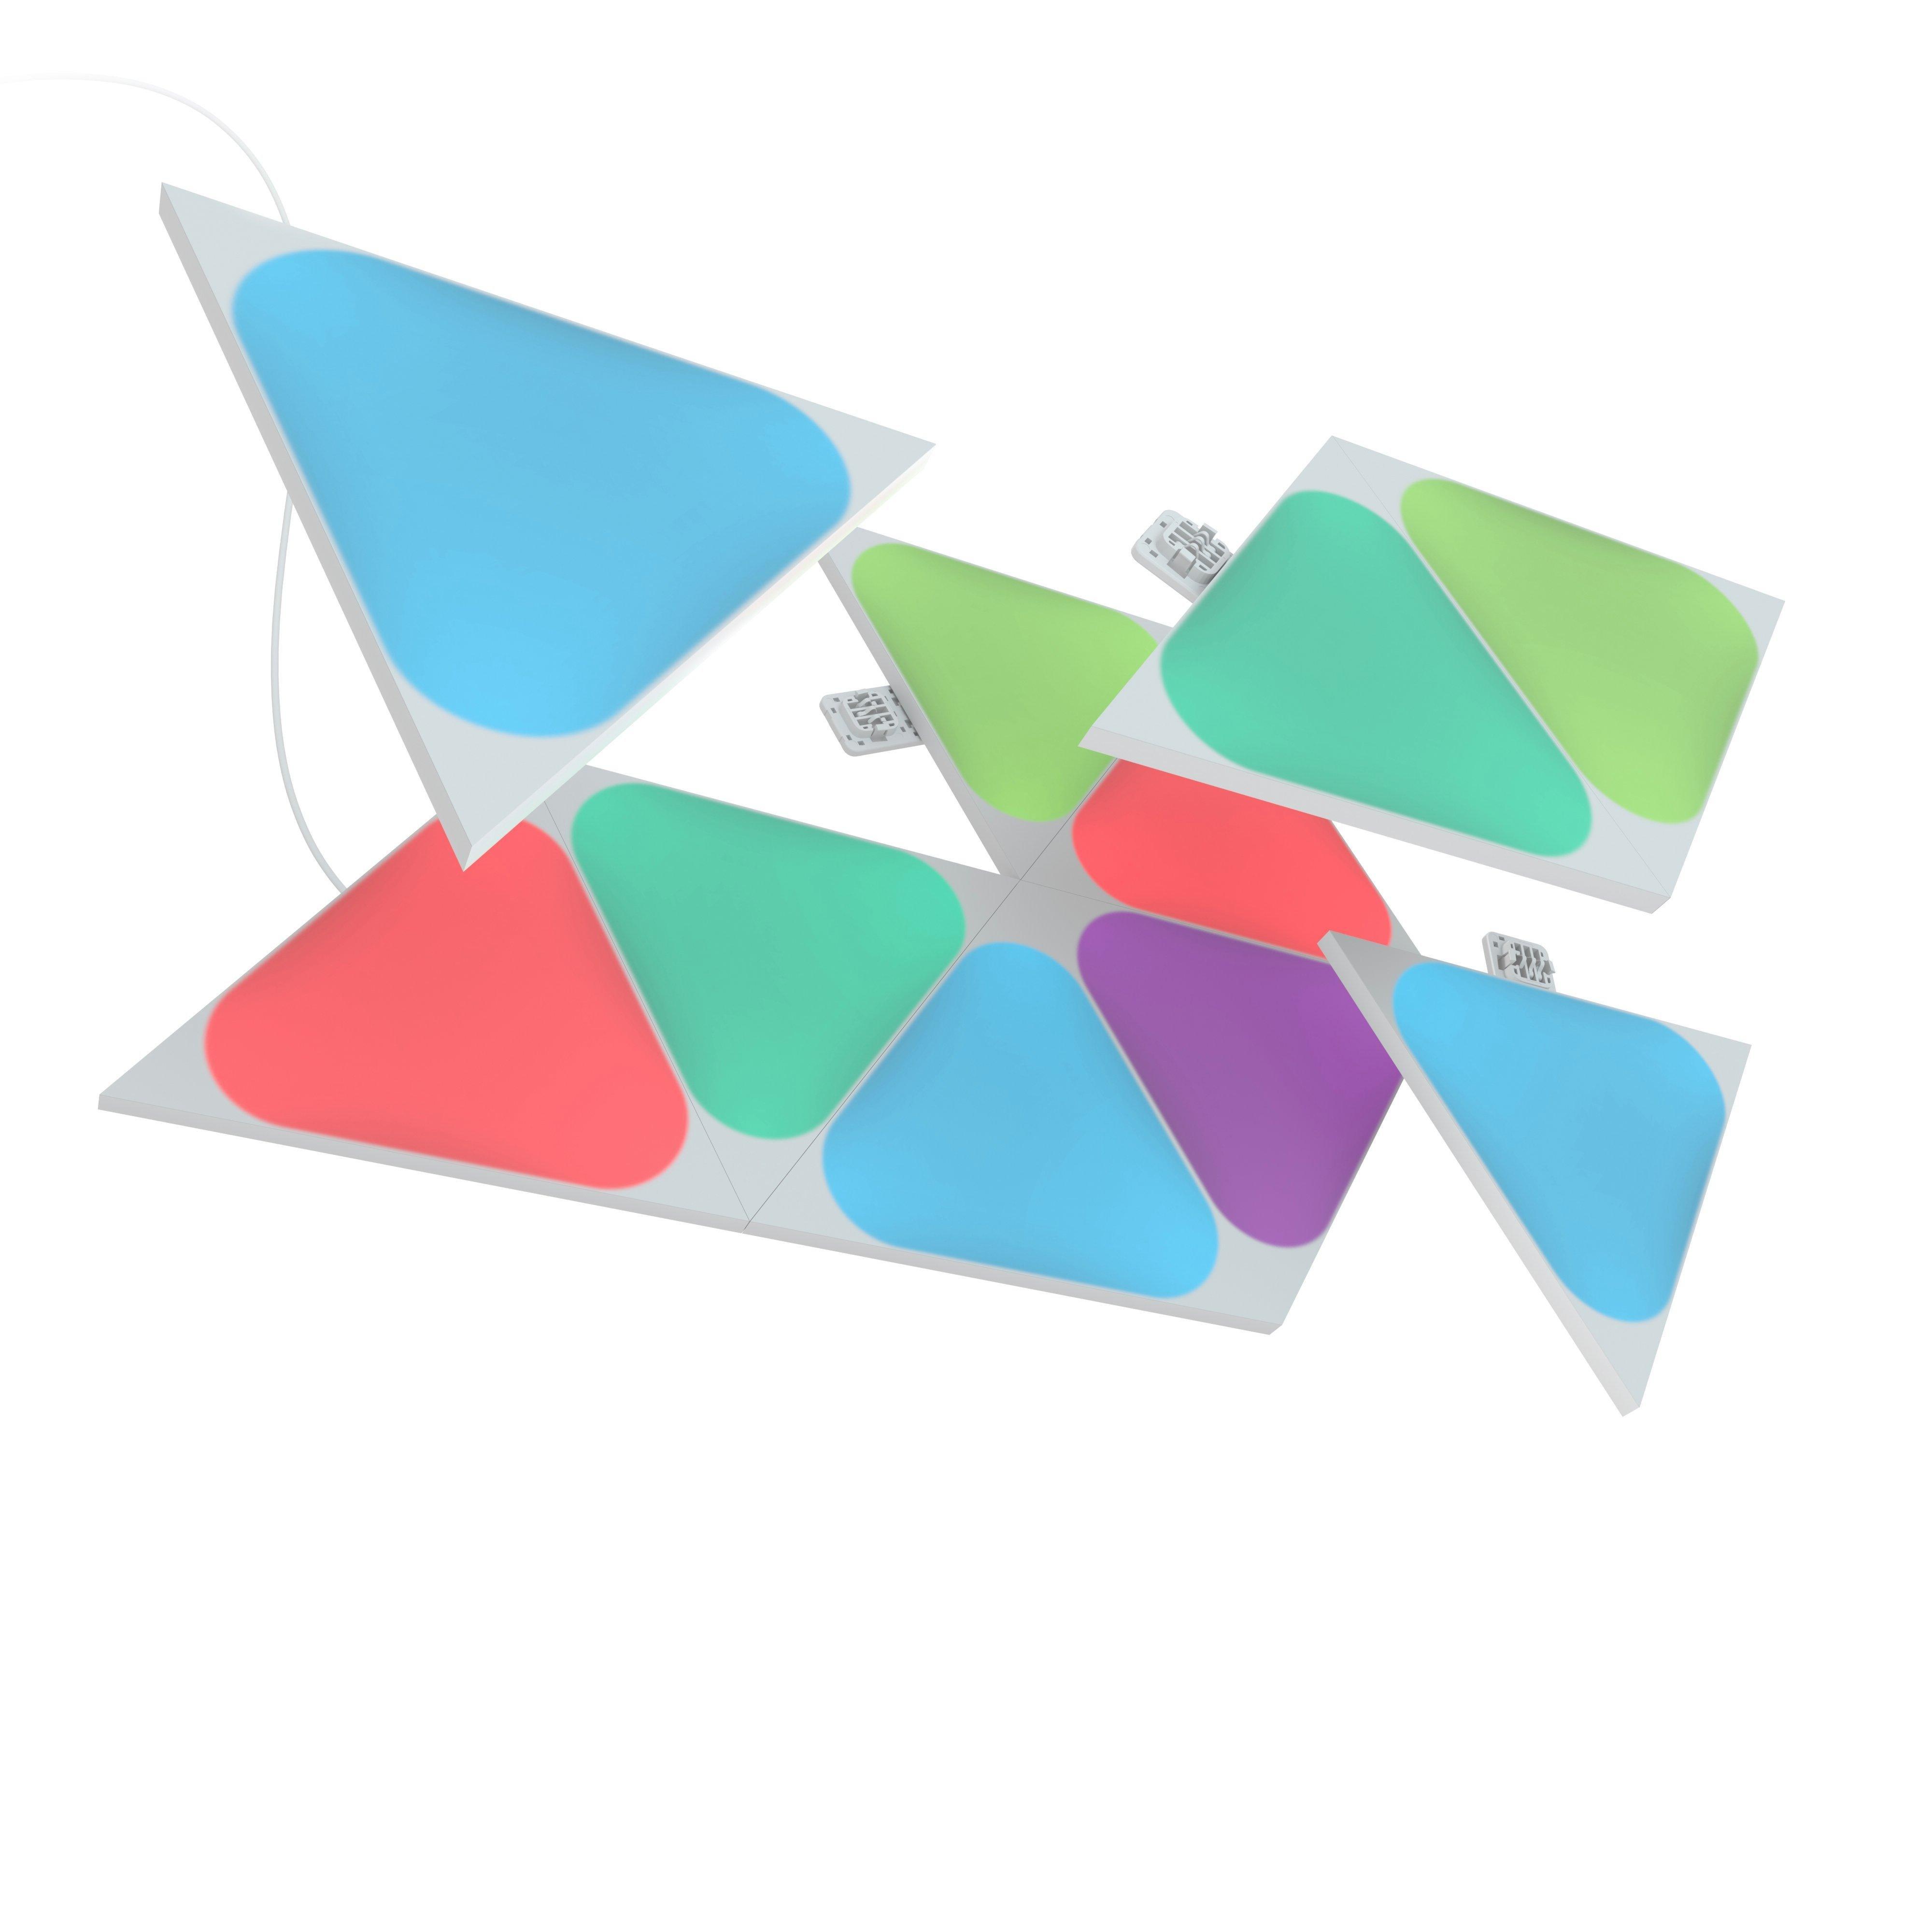 GameStop Nanoleaf Expansion 10 | Triangles Shapes Pack Mini Pack Light Panels